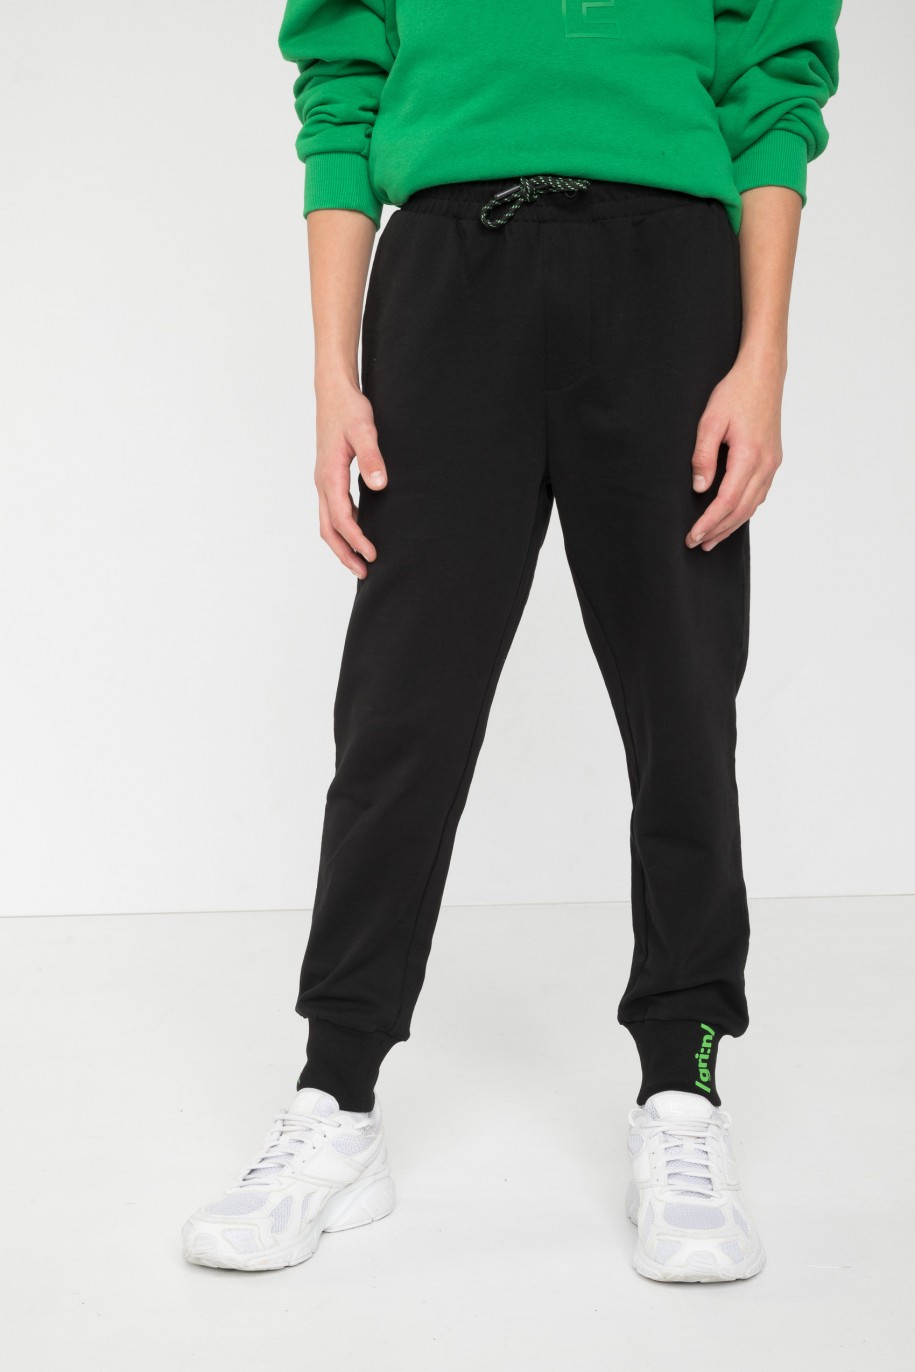 Czarne spodnie dresowe z minimalistycznym nadrukiem na ściągaczach - 45915